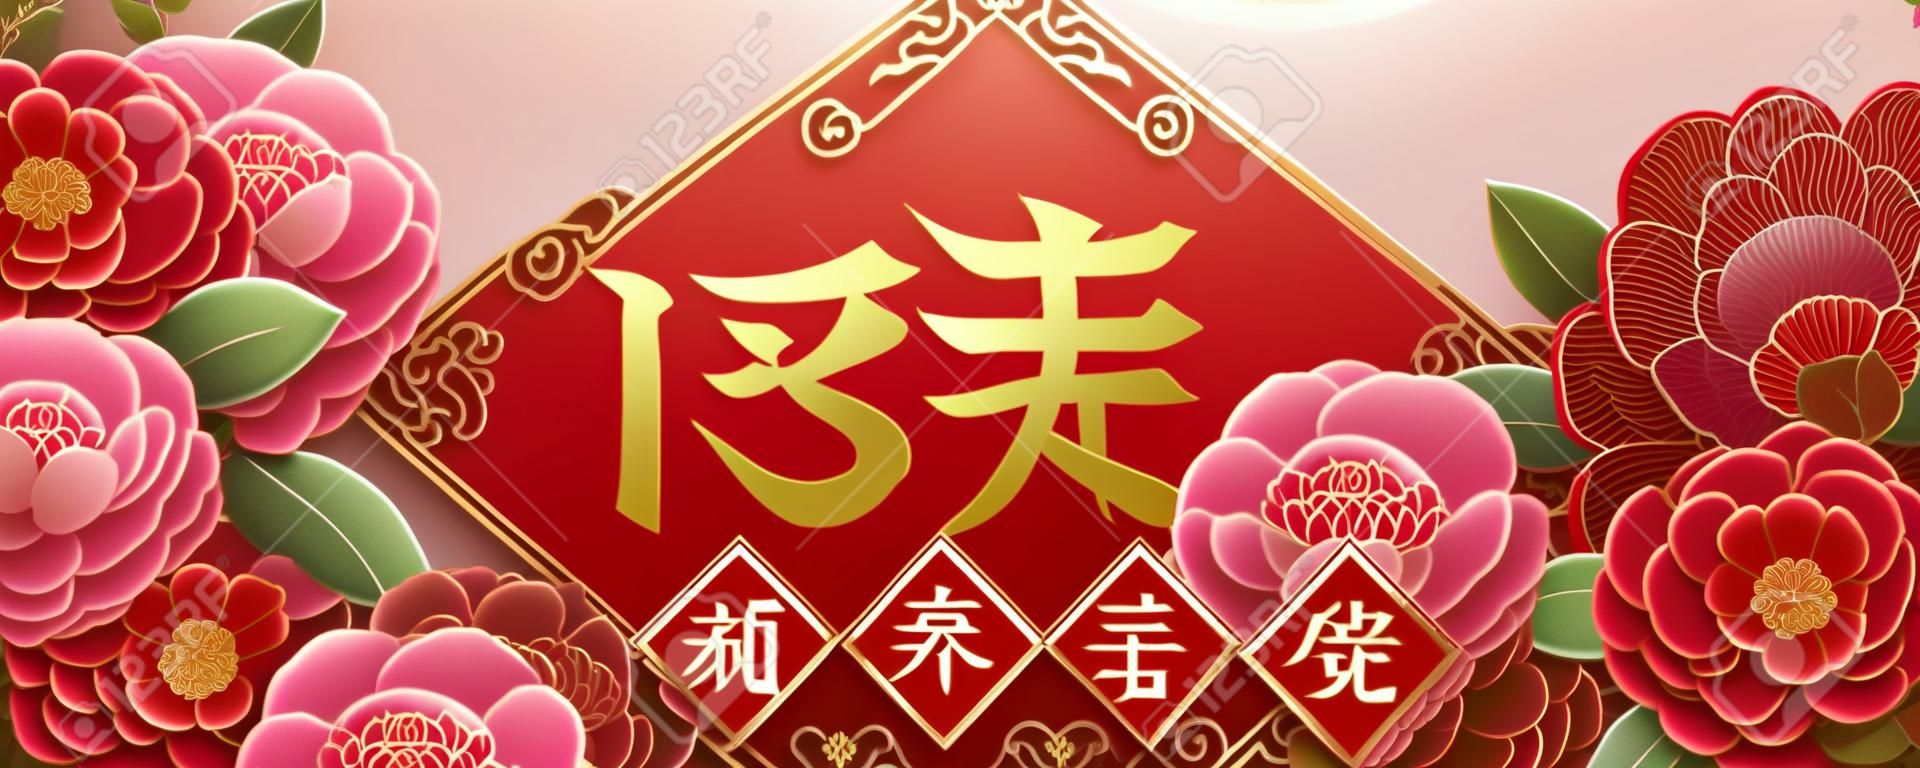 美しい牡丹の花を持つ旧暦のデザイン、真ん中に中国語で書かれた春